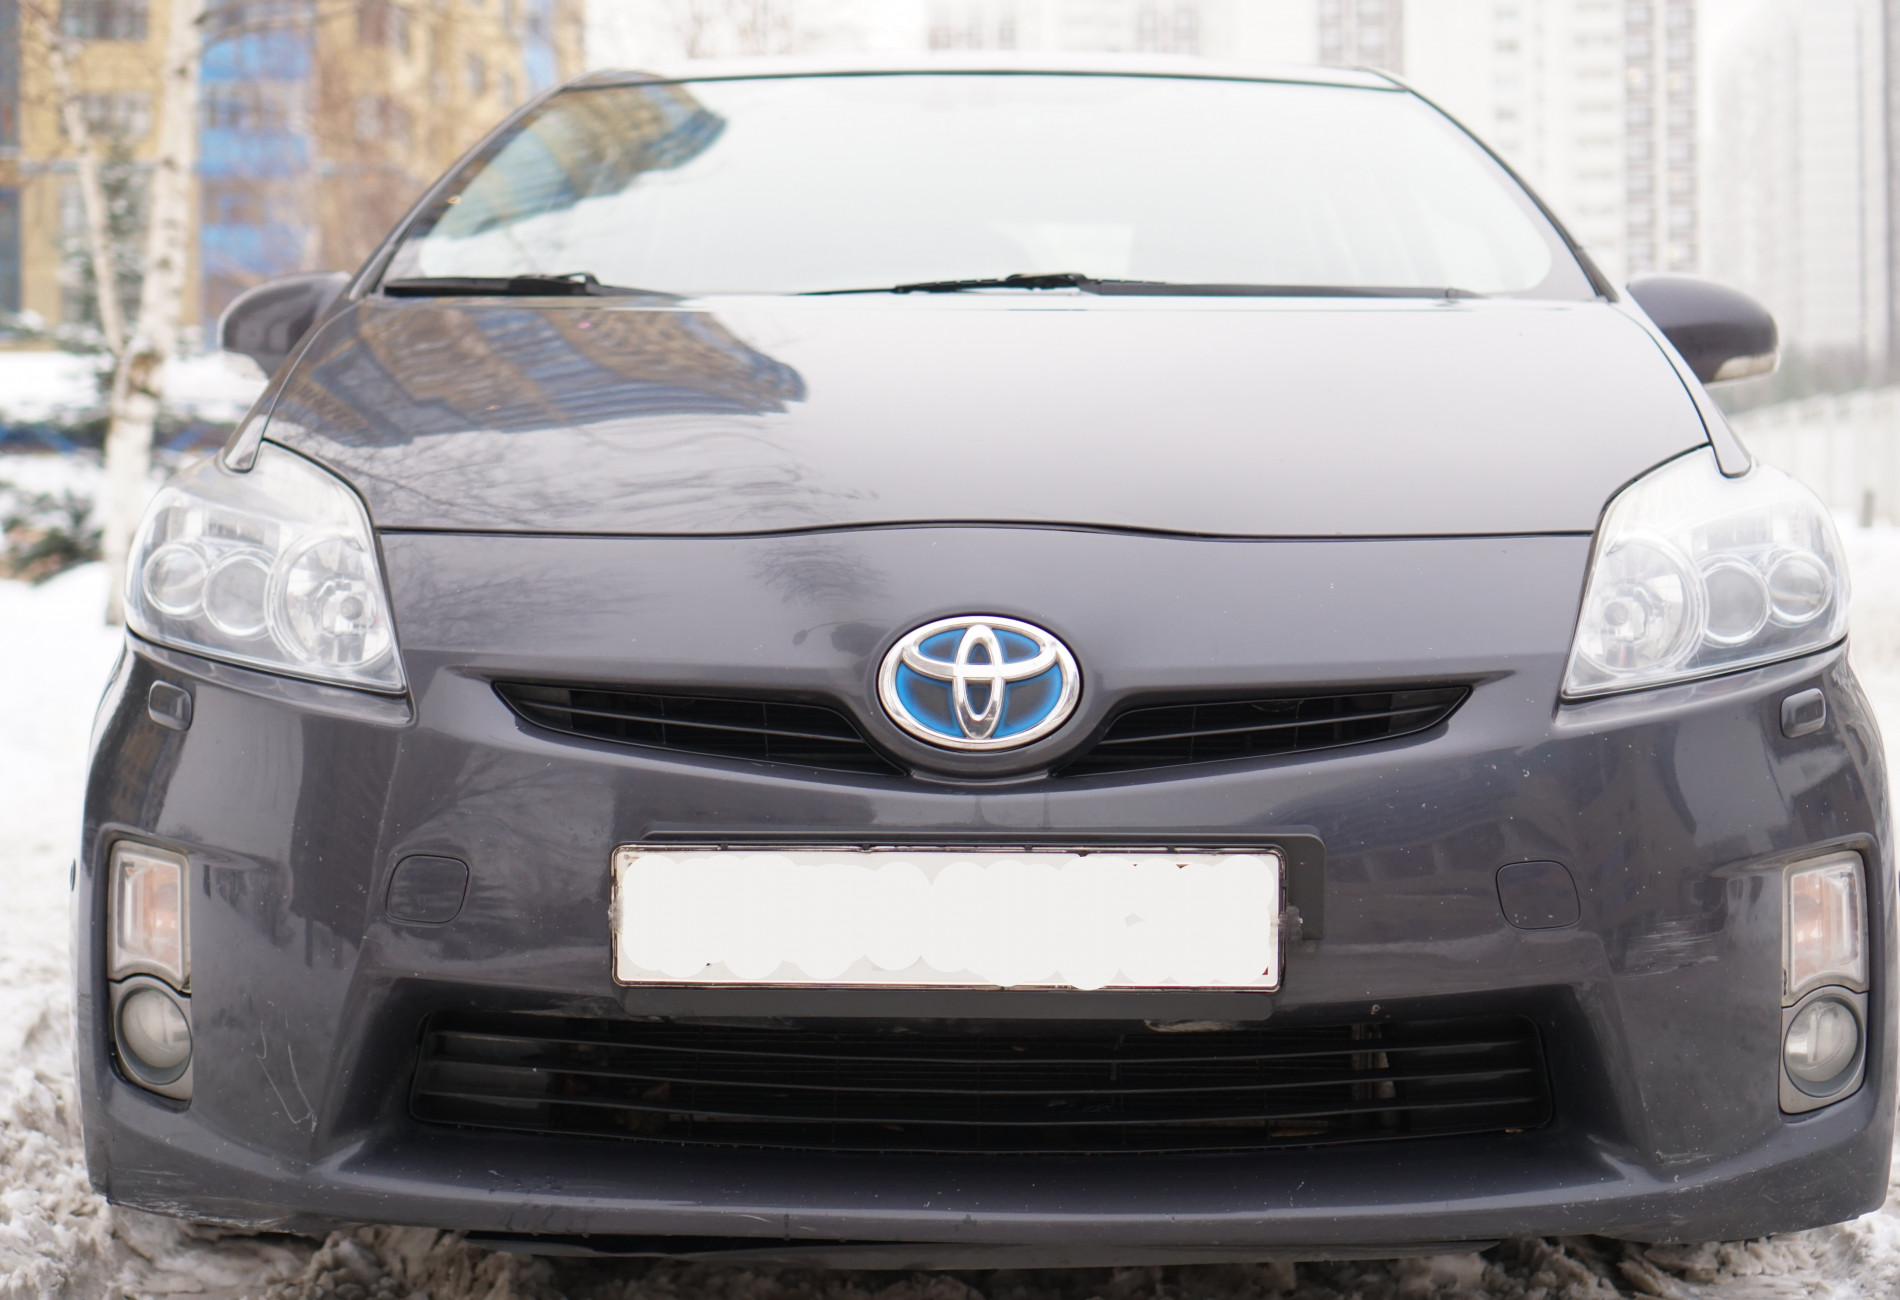 Аренда toyota prius эконом класса 2010 года в городе Москва Строгино от 2400 руб./сутки, передний привод, двигатель: гибрид, объем 1.8 литров, ОСАГО (Мультидрайв), без водителя, недорого, вид 5 - RentRide